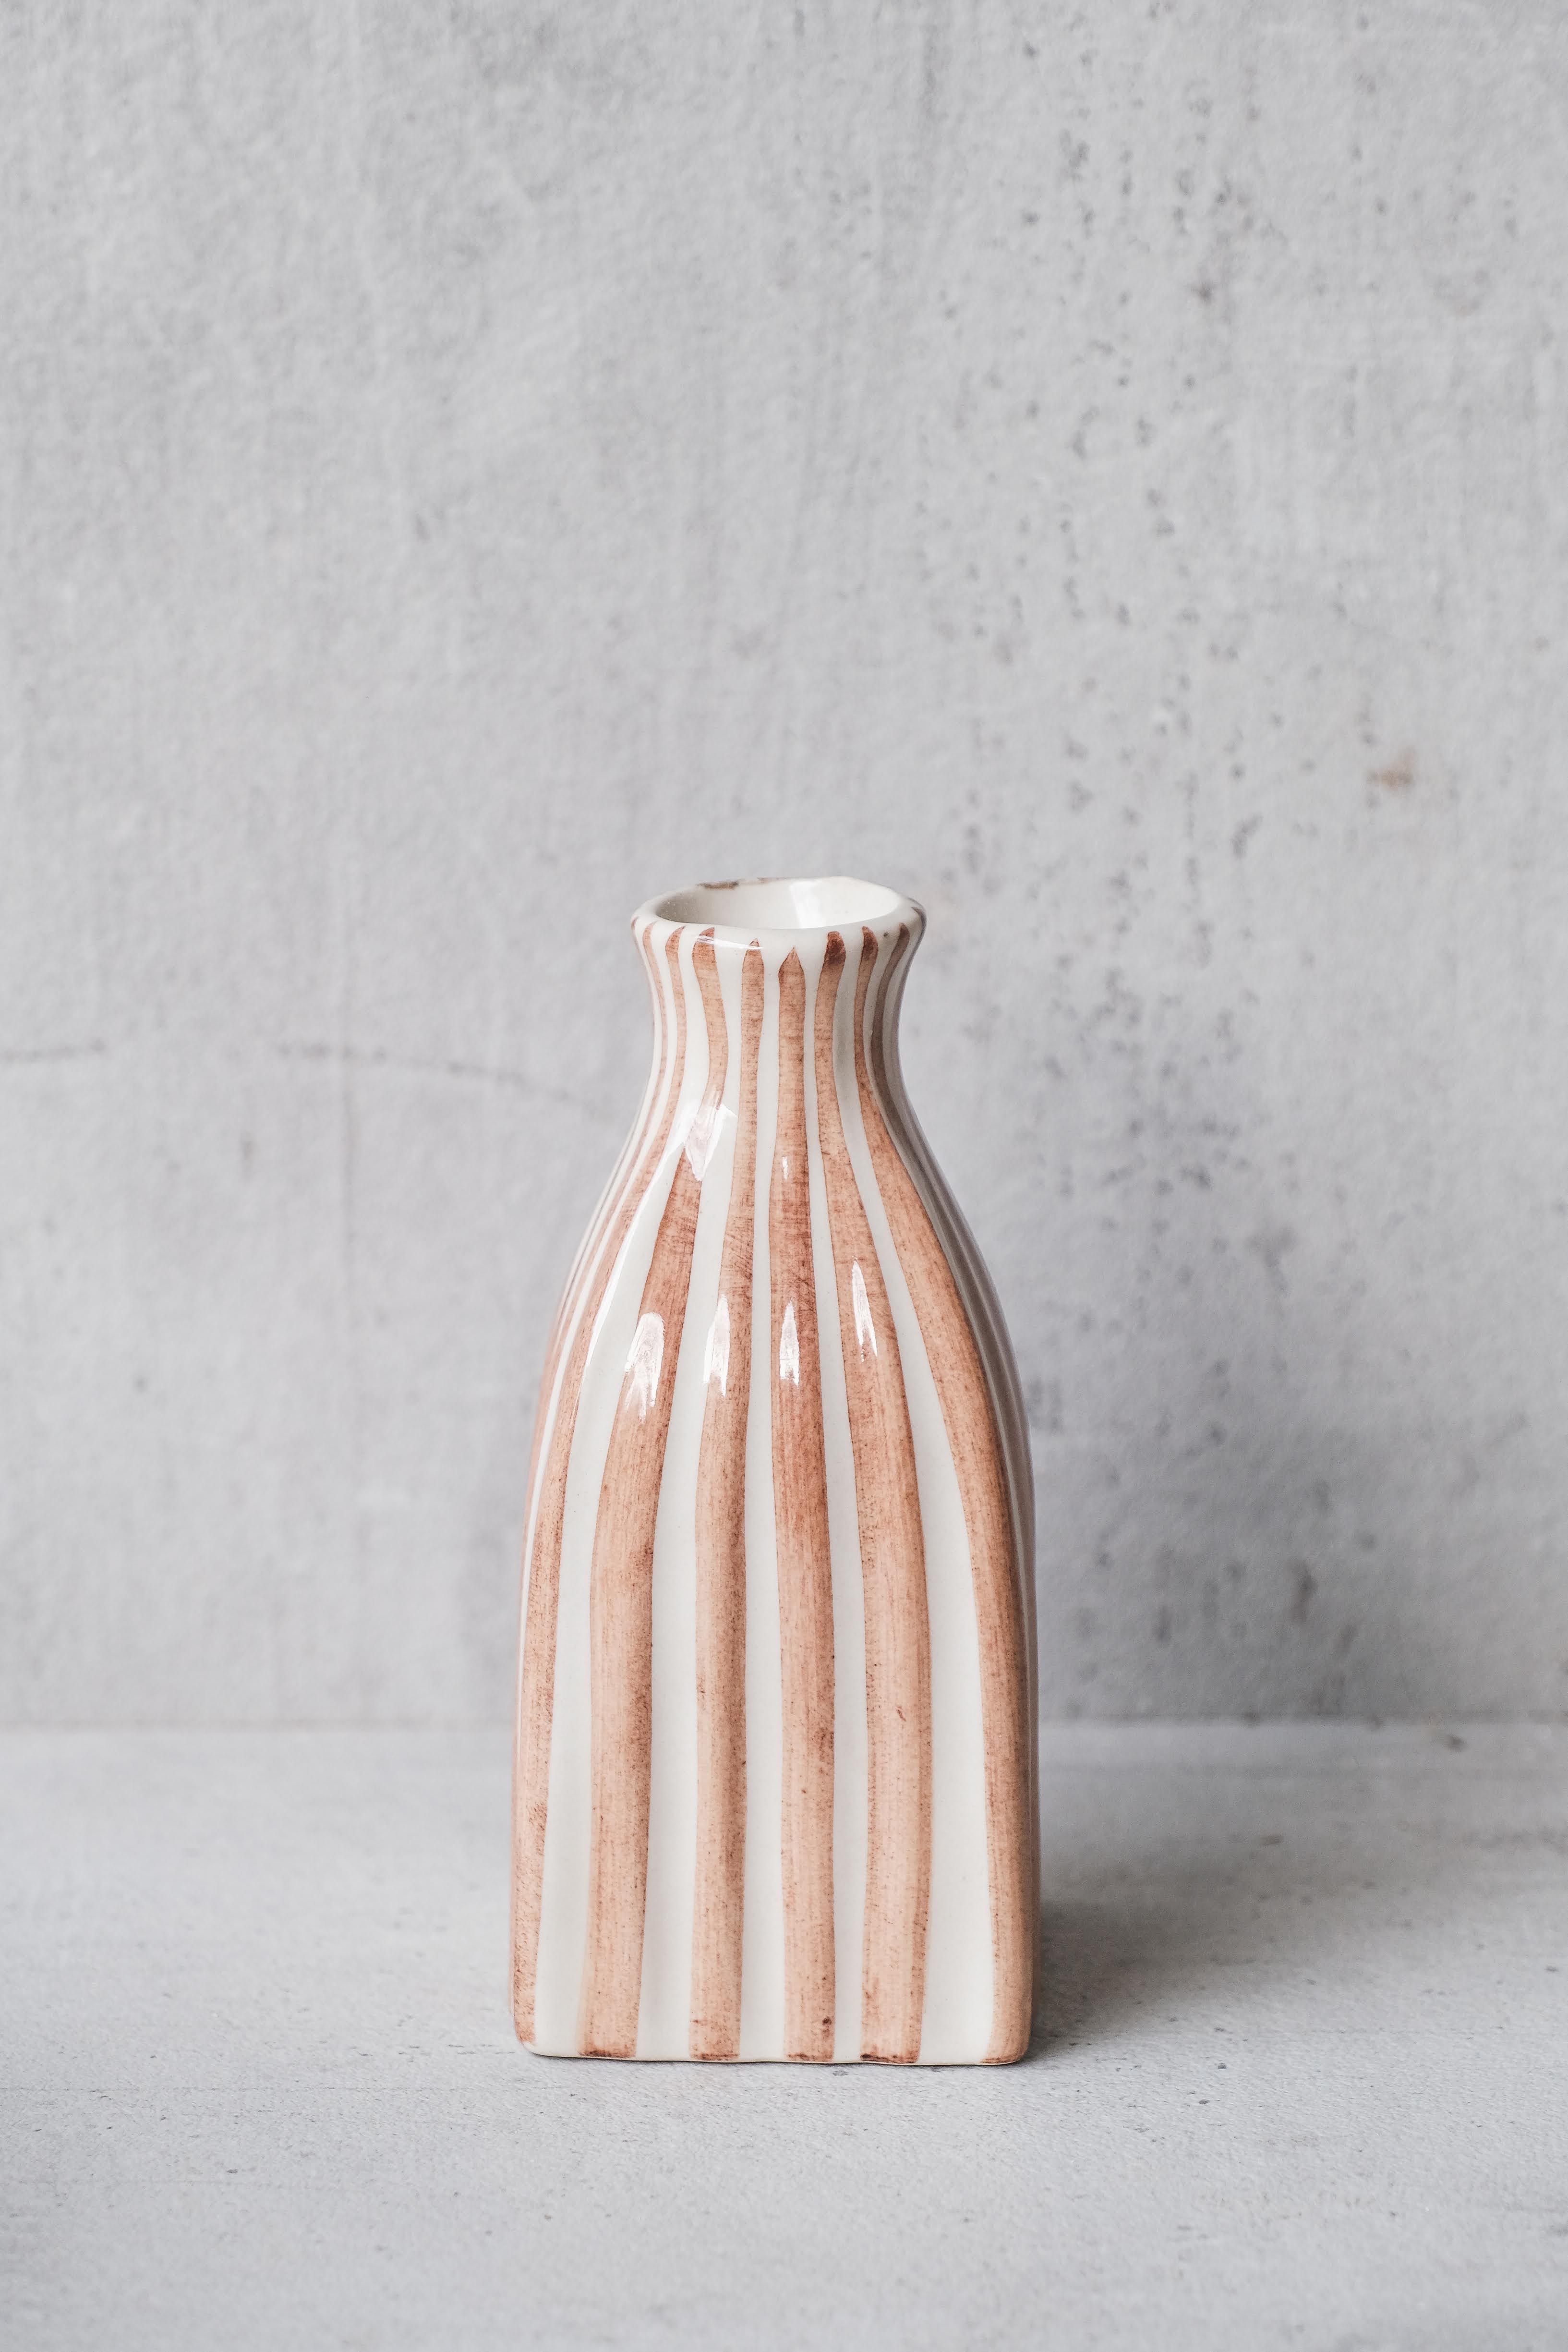 Cabana Striped Ceramic Vase